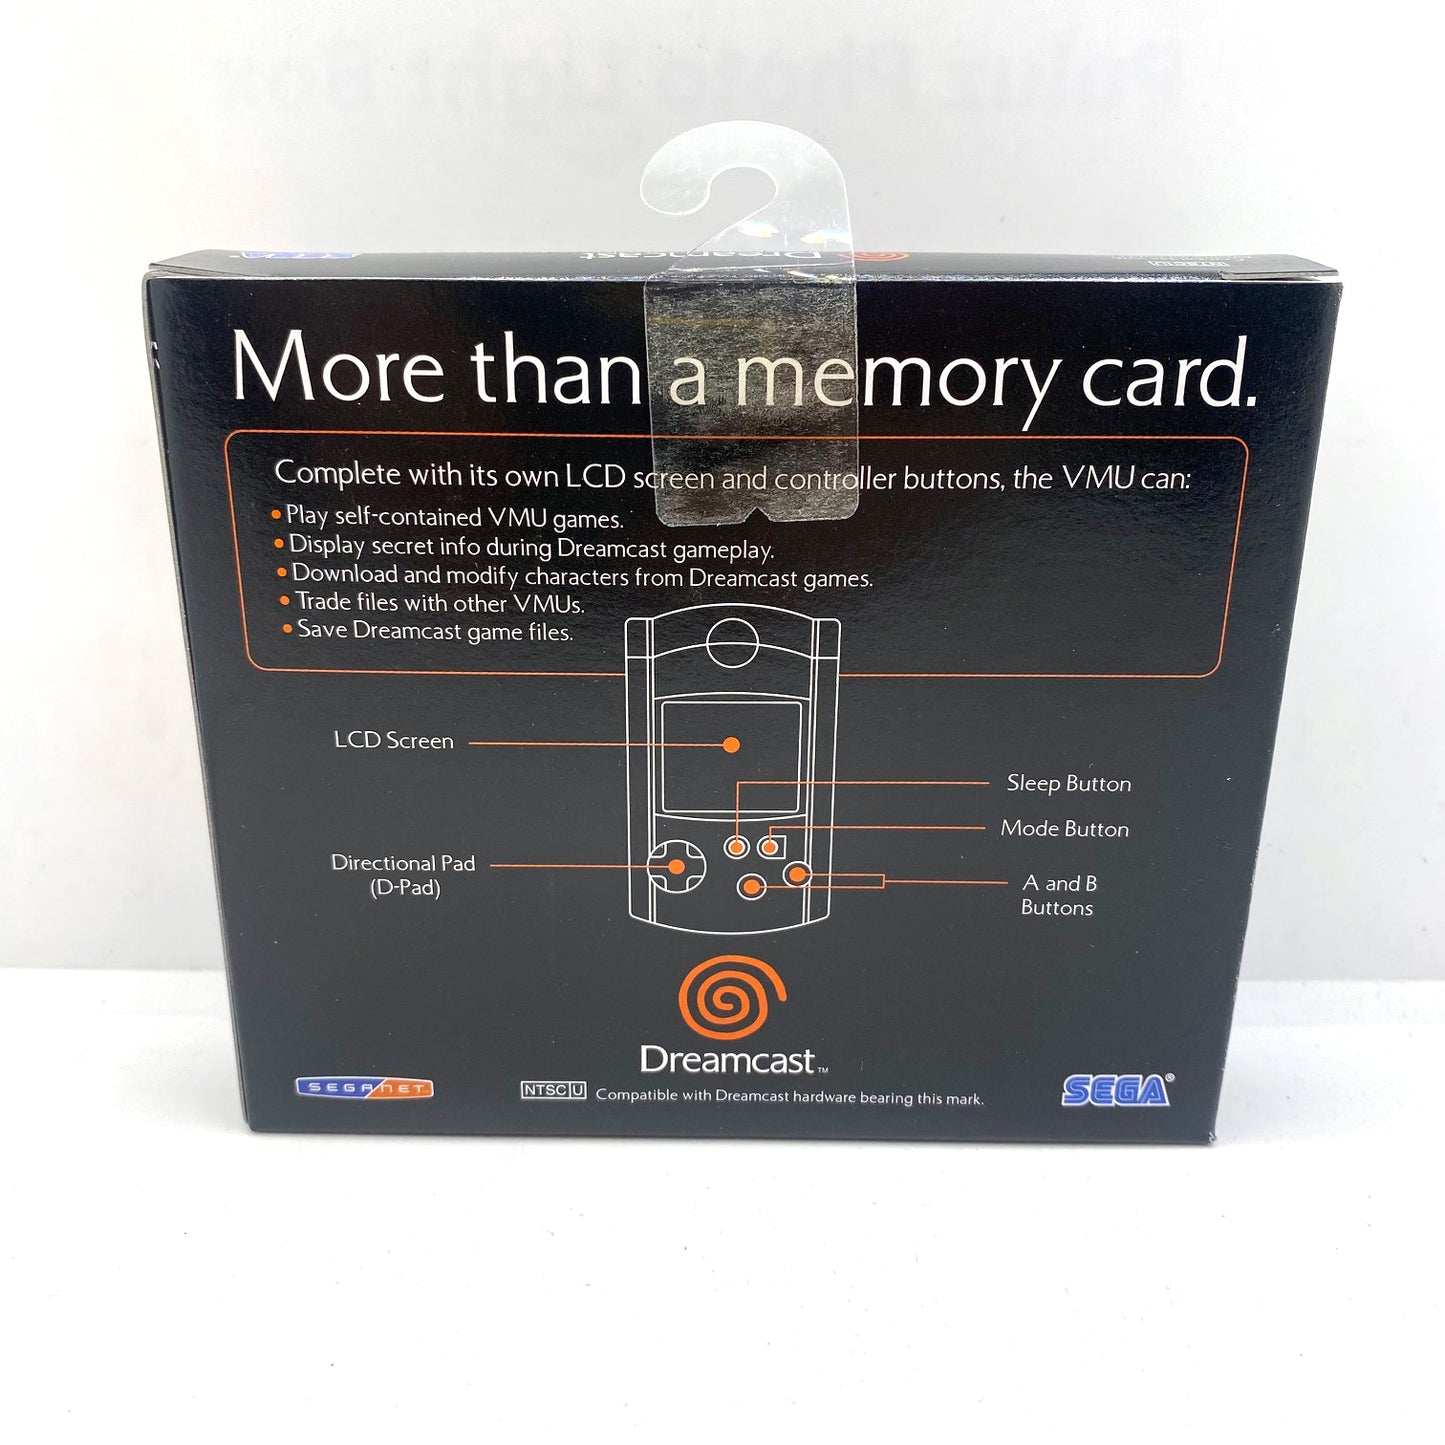 Carte mémoire Visual Memory Sega Dreamcast